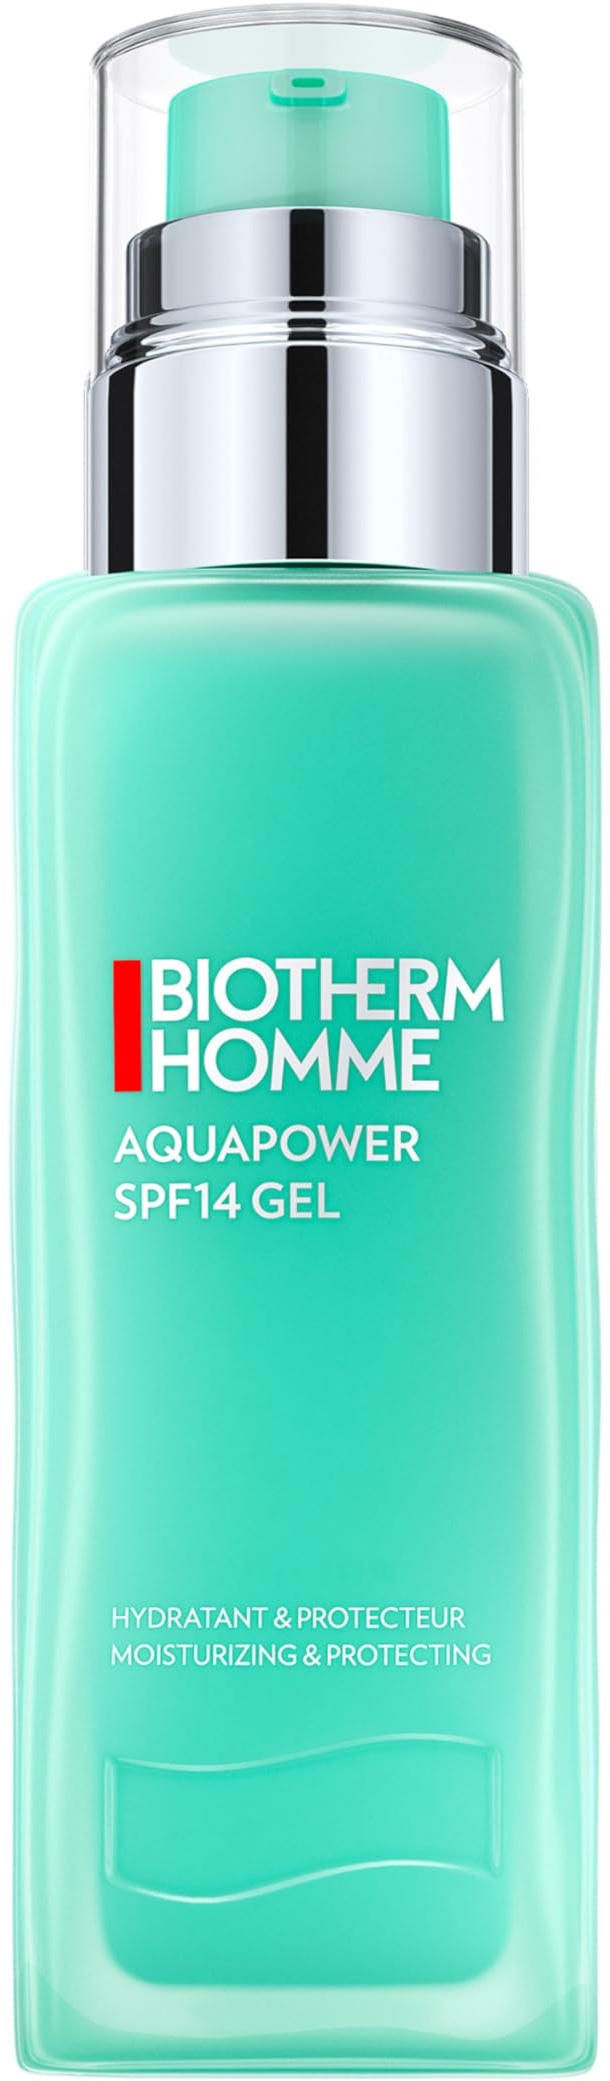 Biotherm Homme Aquapower SPF14 Gesichtsgel, erfrischende Tagespflege für Männer, mit Life Plankton und Oligo-Mineralien, pflegt und schützt vor UV-Strahlung und Umwelteinflüssen, 75 ml